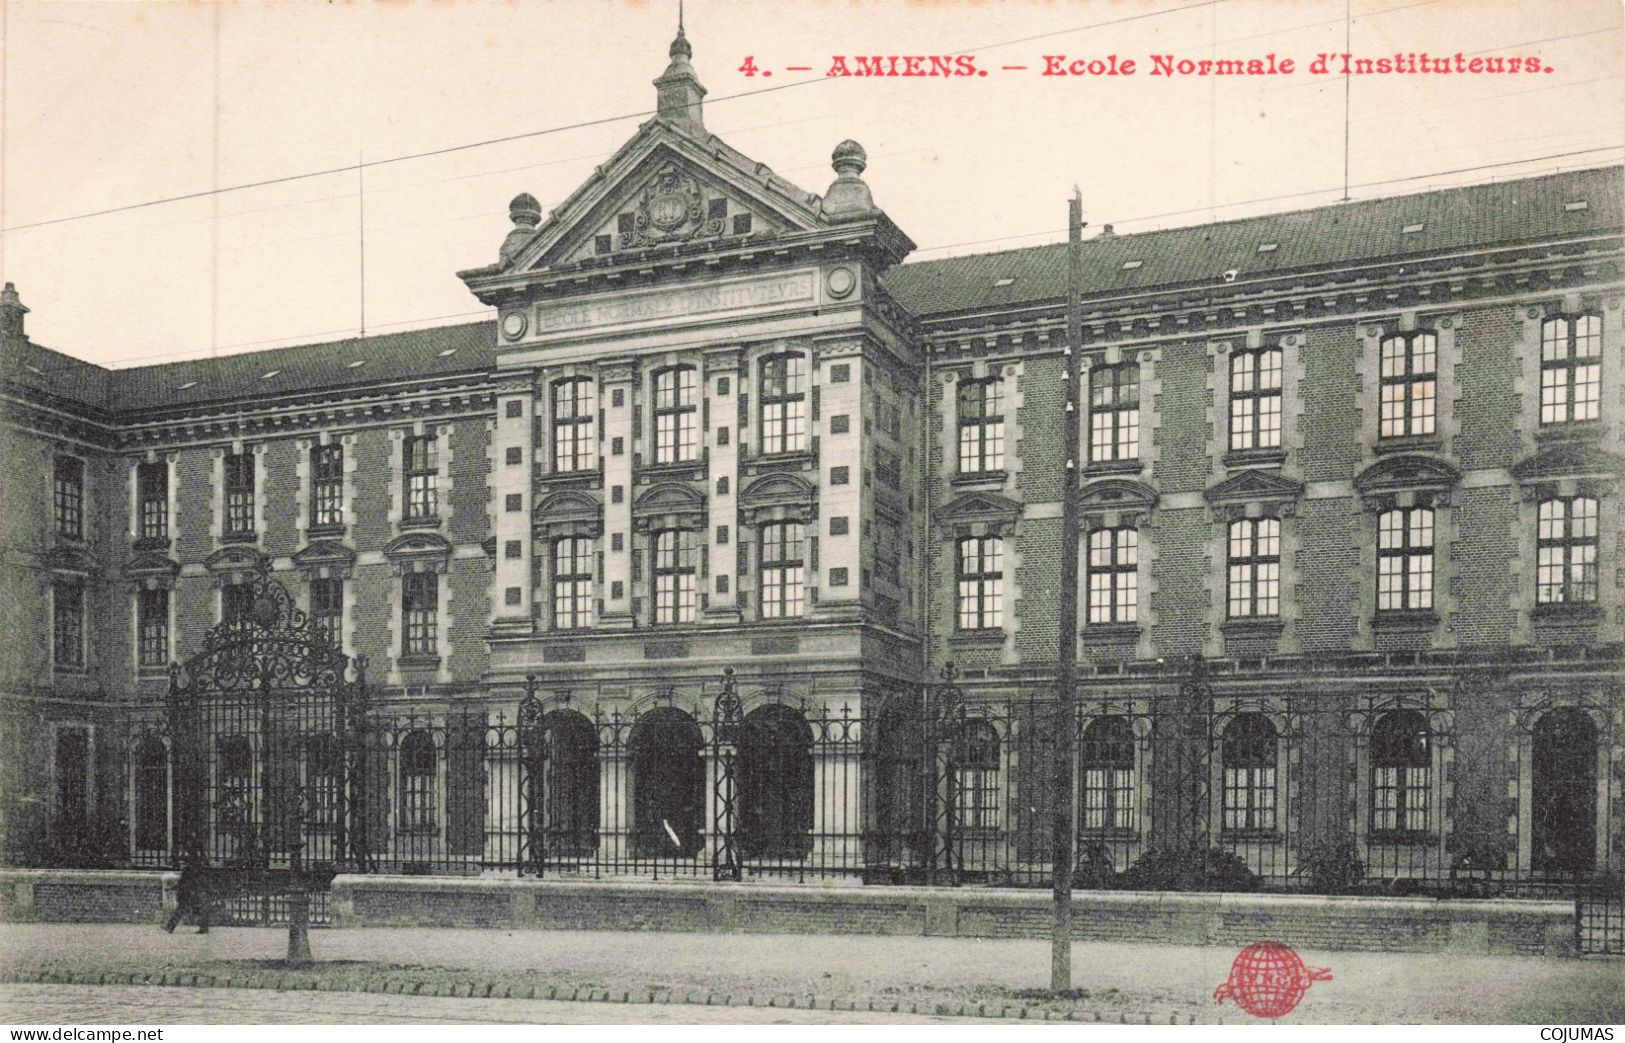 80 - AMIENS _S28474_ Ecole Normale D'Instituteurs - Amiens